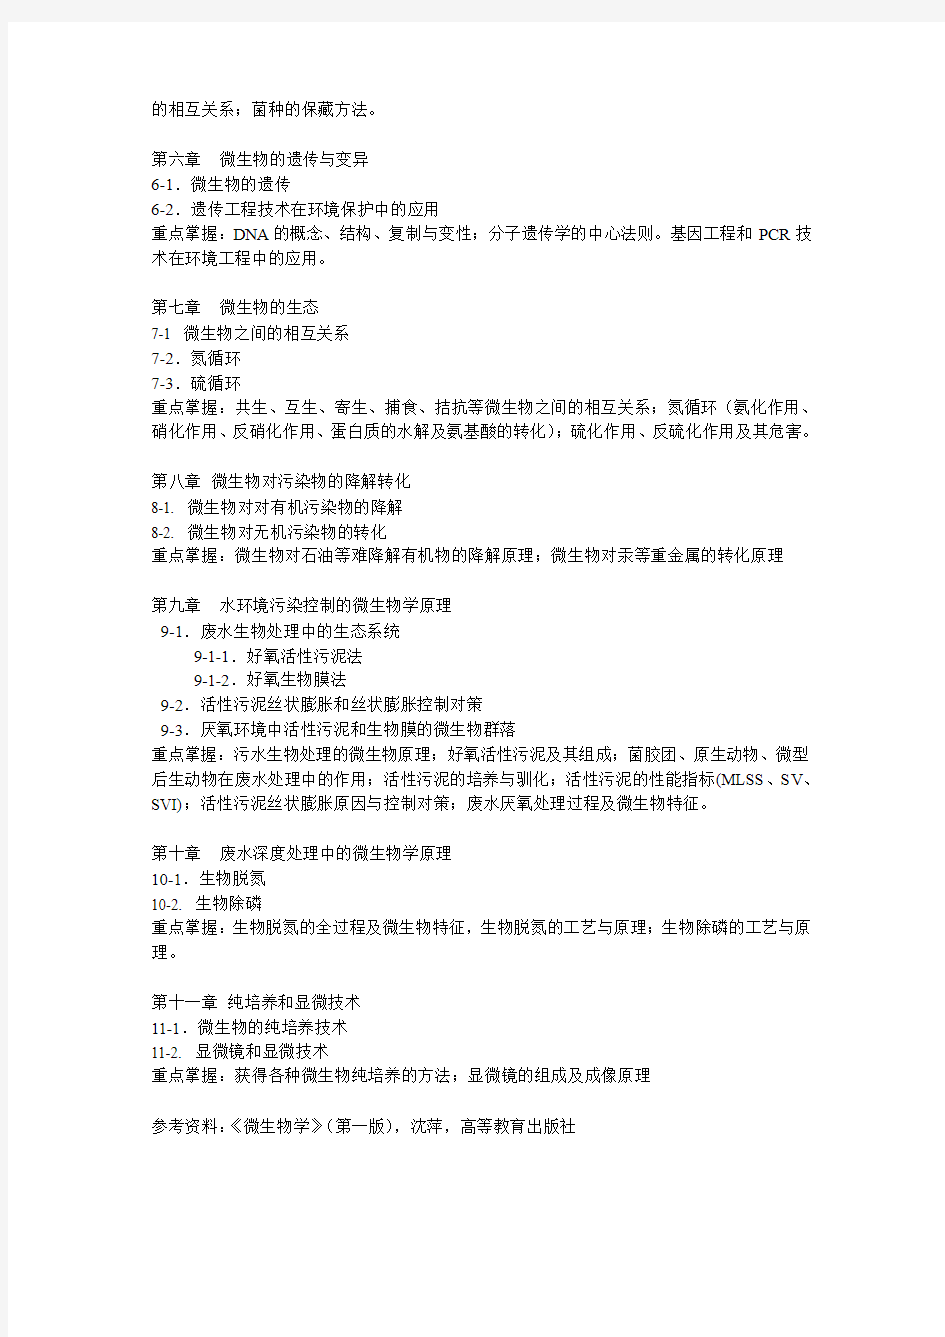 中国地质大学(北京)水环学院考试大纲